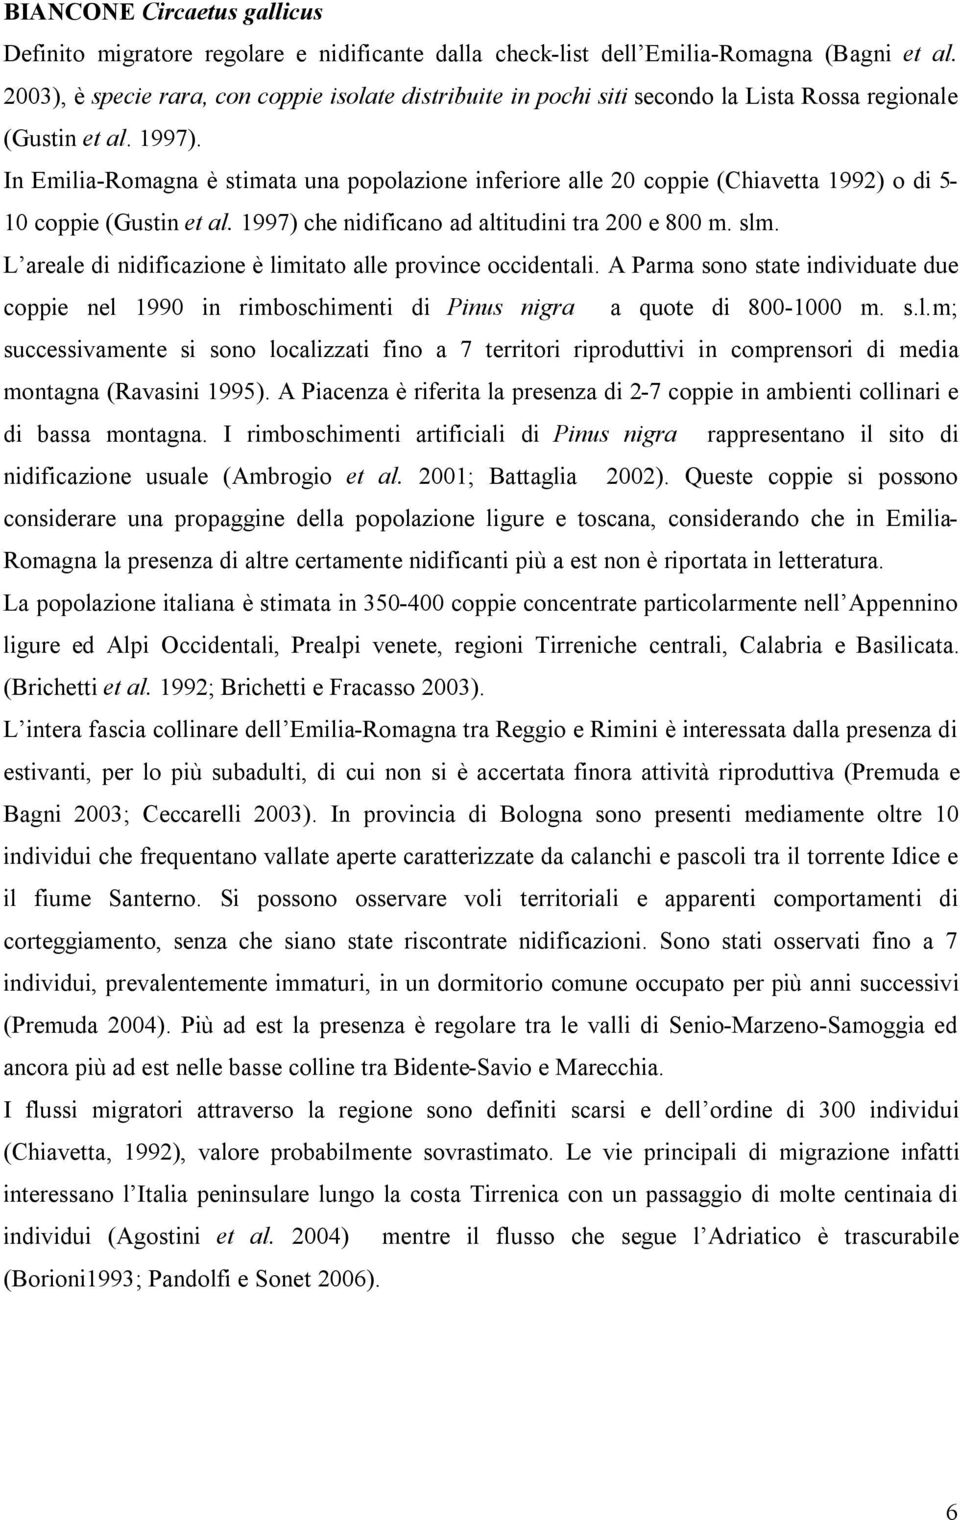 In Emilia-Romagna è stimata una popolazione inferiore alle 20 coppie (Chiavetta 1992) o di 5-10 coppie (Gustin et al. 1997) che nidificano ad altitudini tra 200 e 800 m. slm.